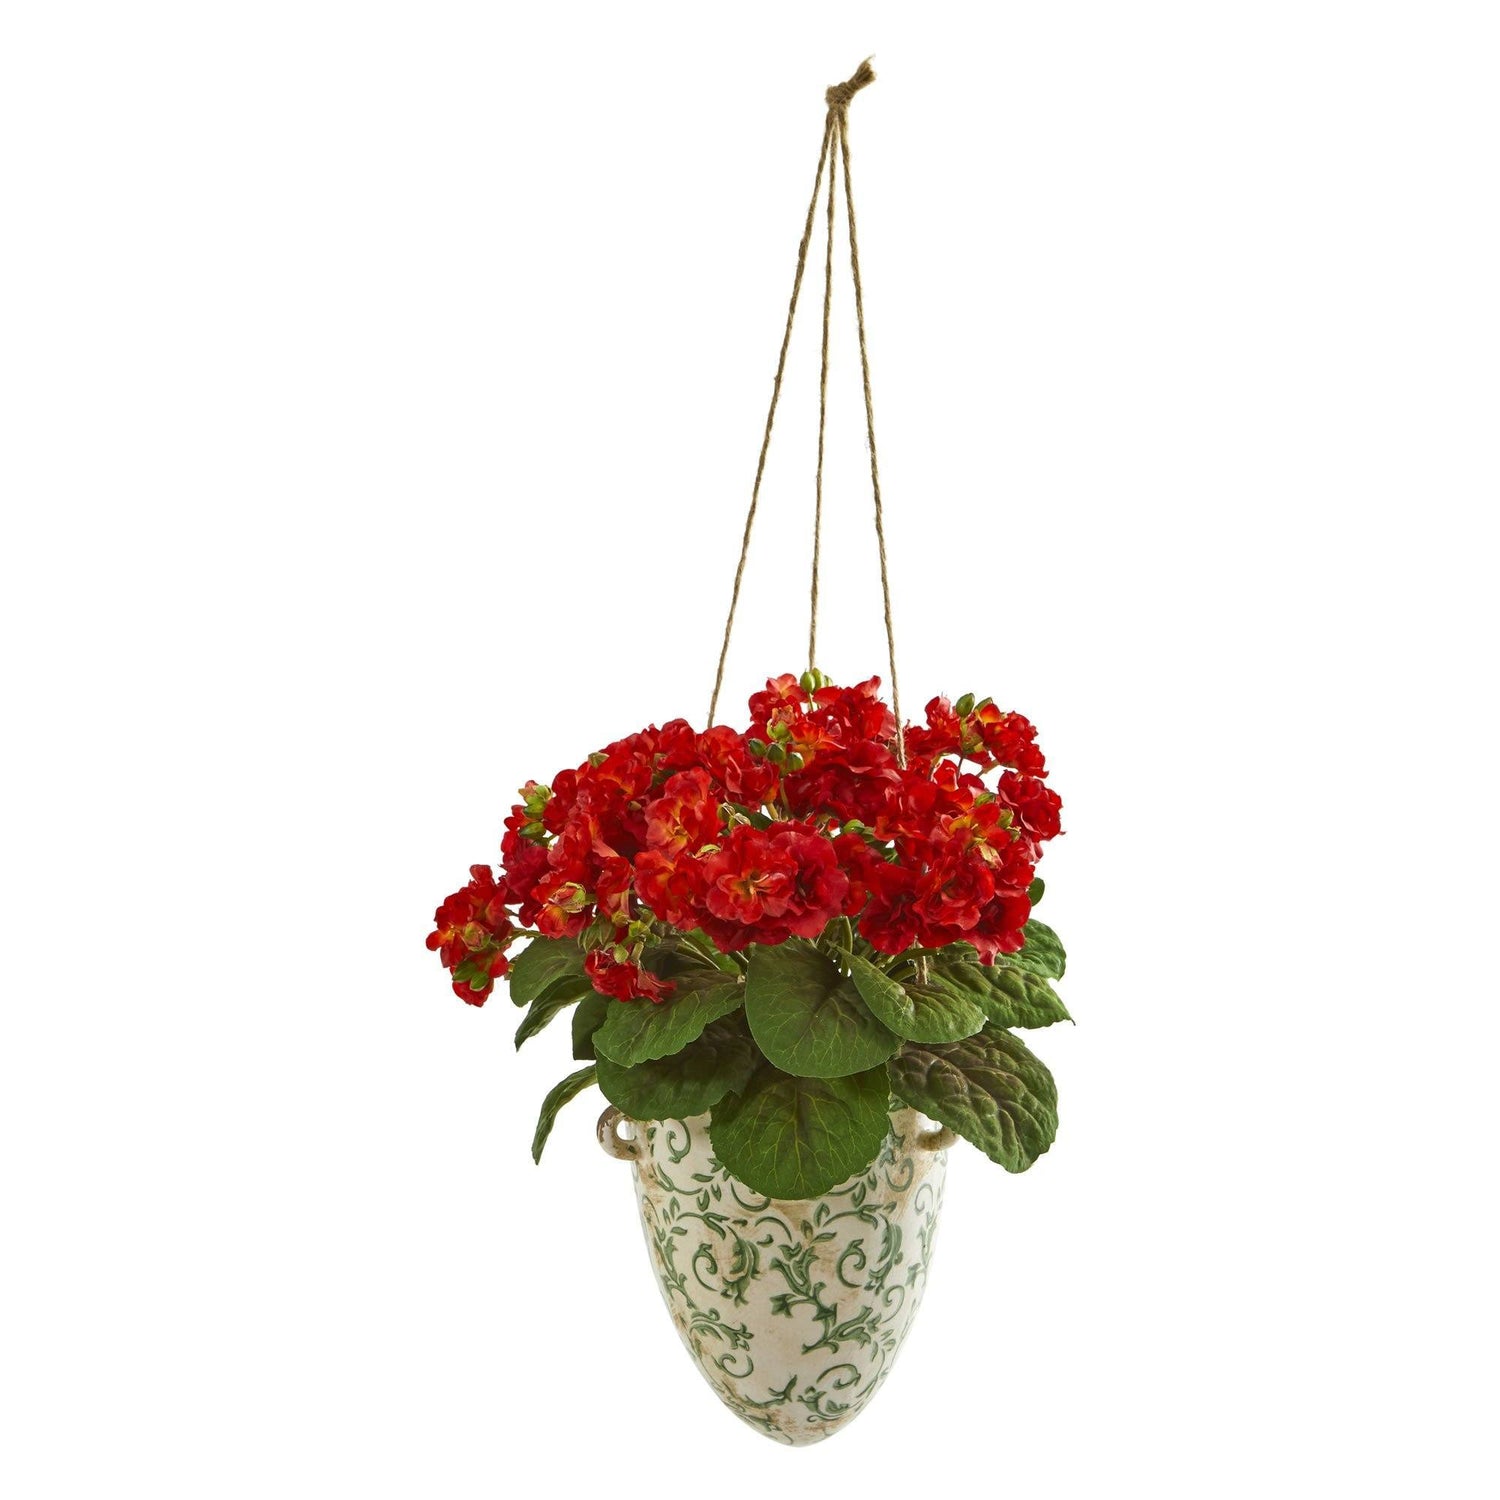 13” Violet Artificial Plant in Floral Hanging Vase